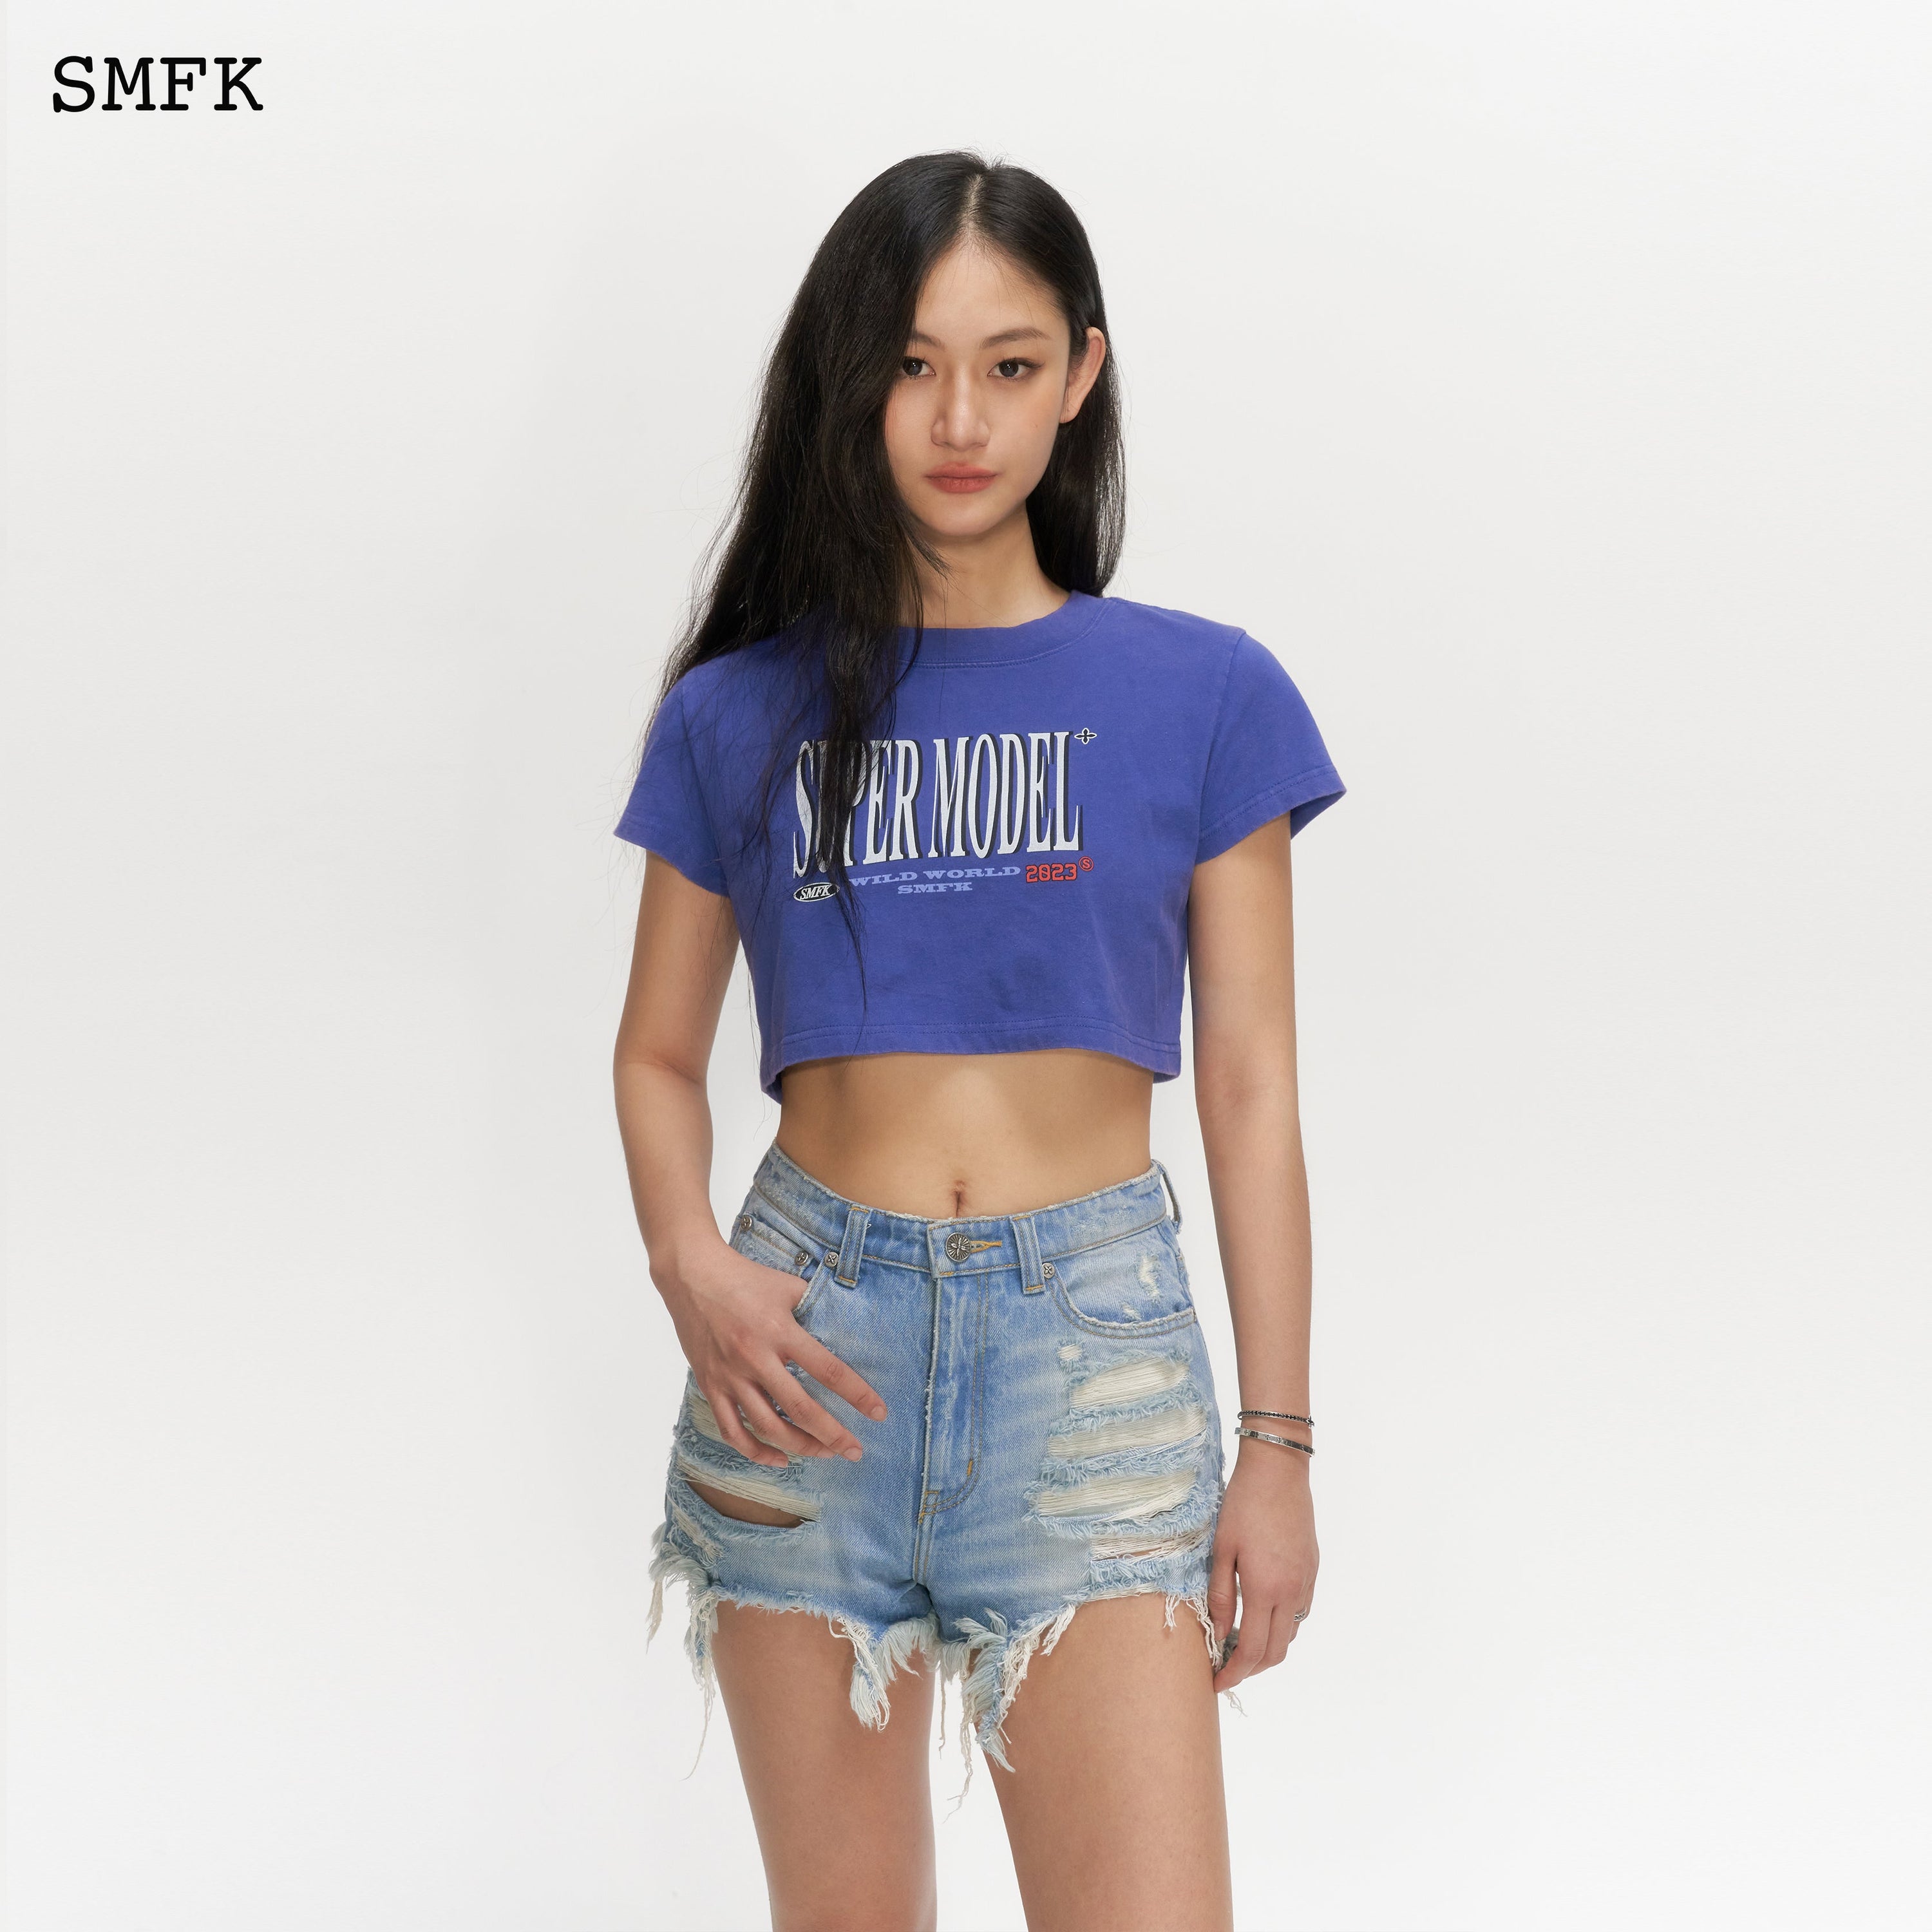 Model Navy Short T-shirt - SMFK Official